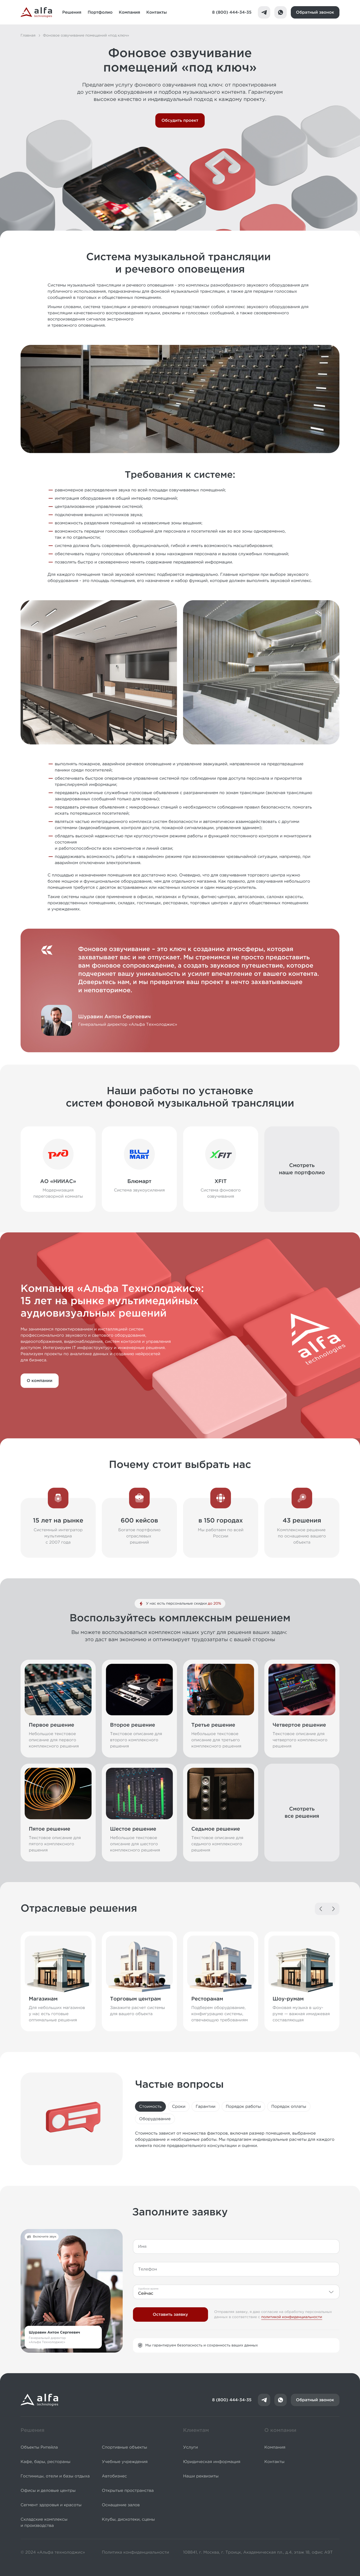 Дизайн сайта компании Альфа Технолоджис на платформе apps.zaurisakov.com